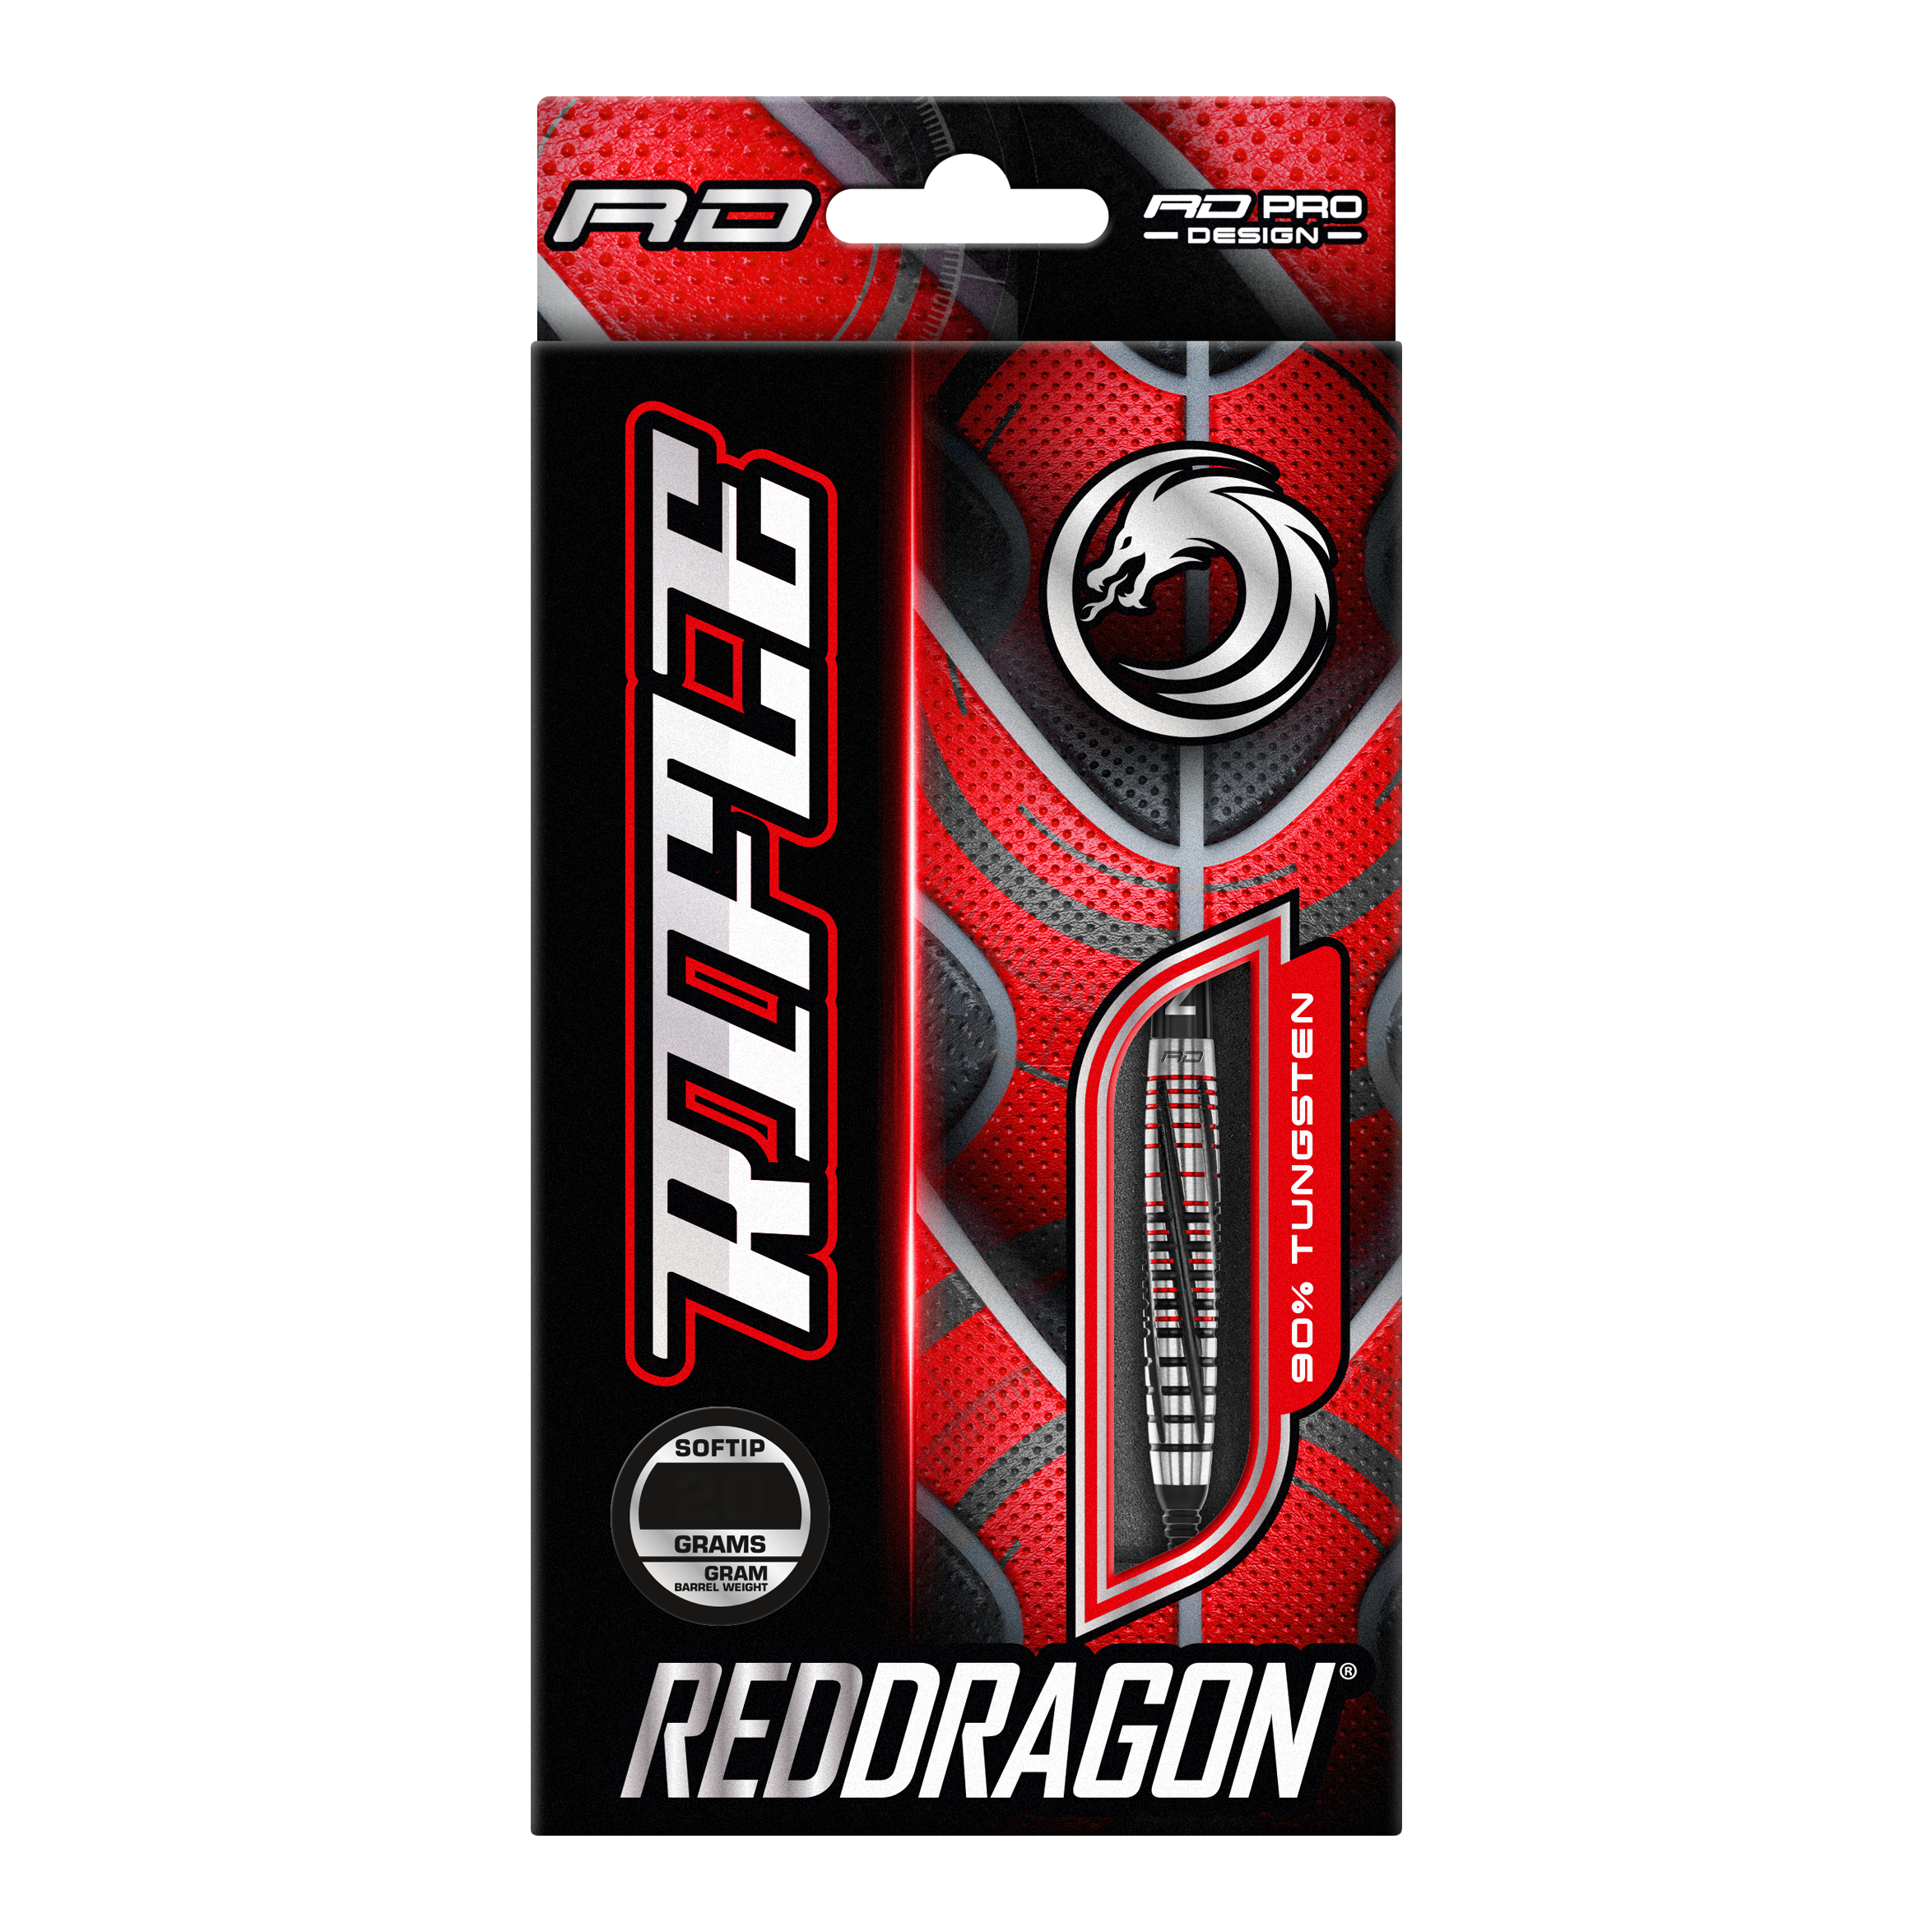 Red Dragon Rifle zachte pijltjes - 20 g